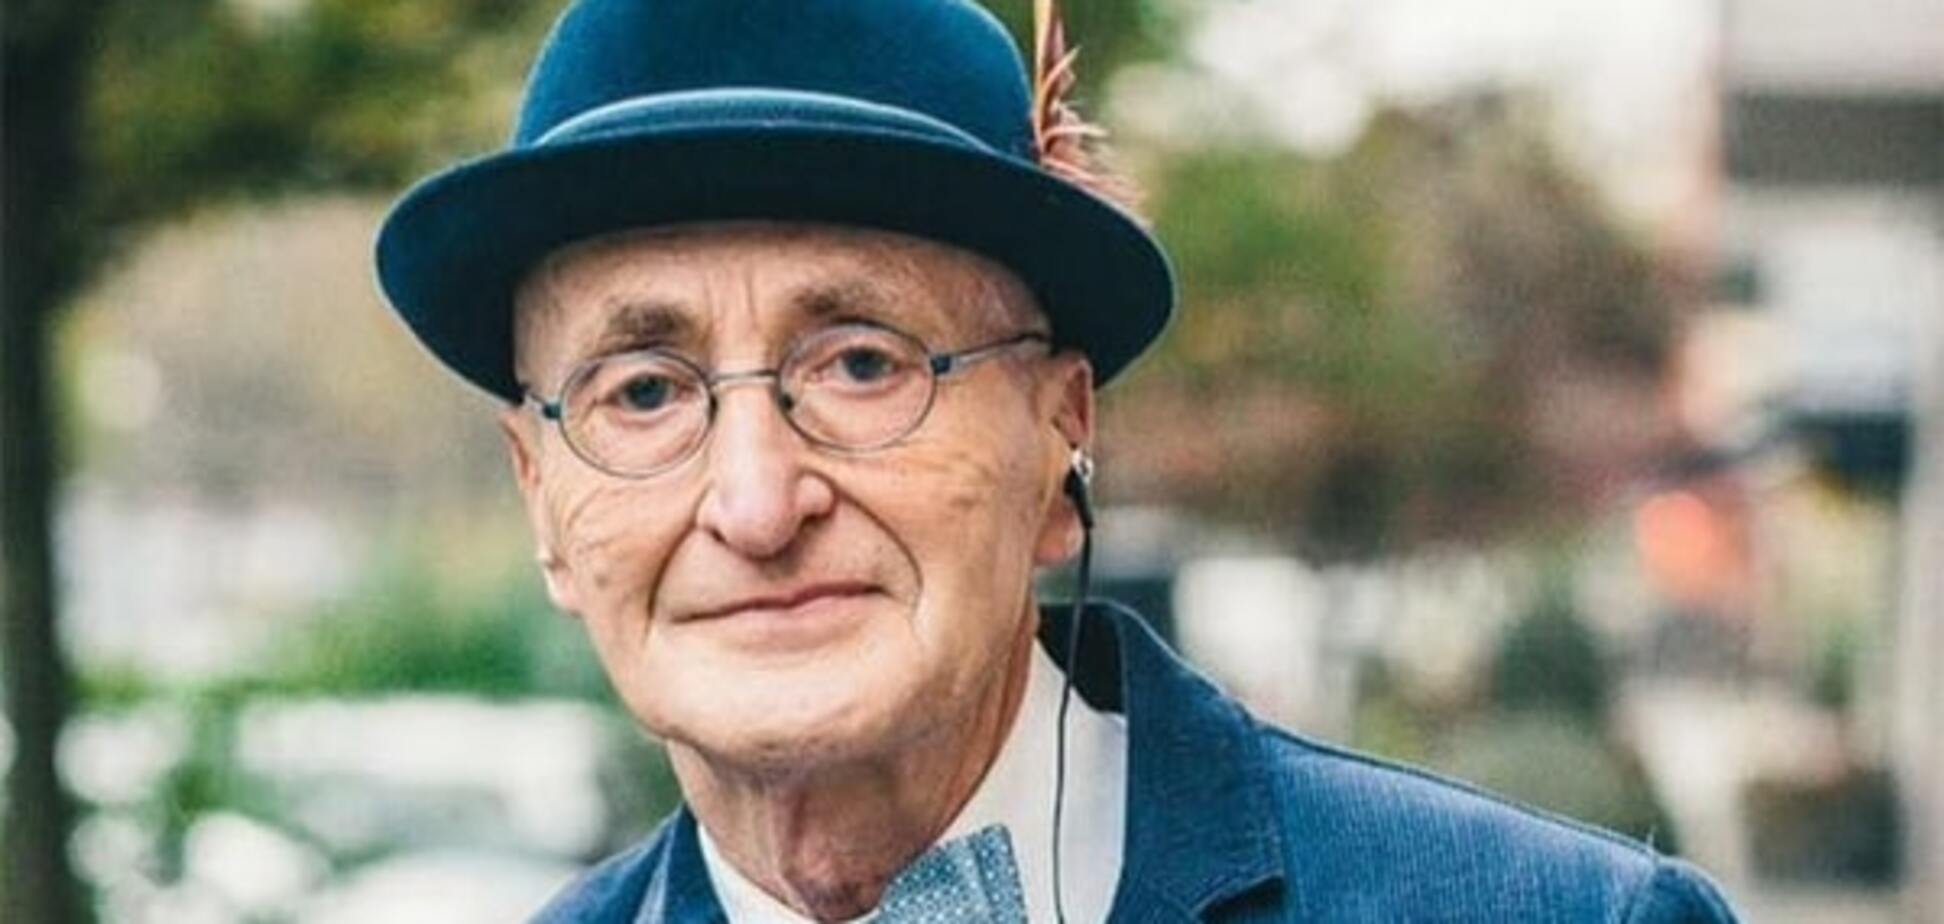 Берлинский дедушка знает, как выглядеть стильно: фото престарелого модника